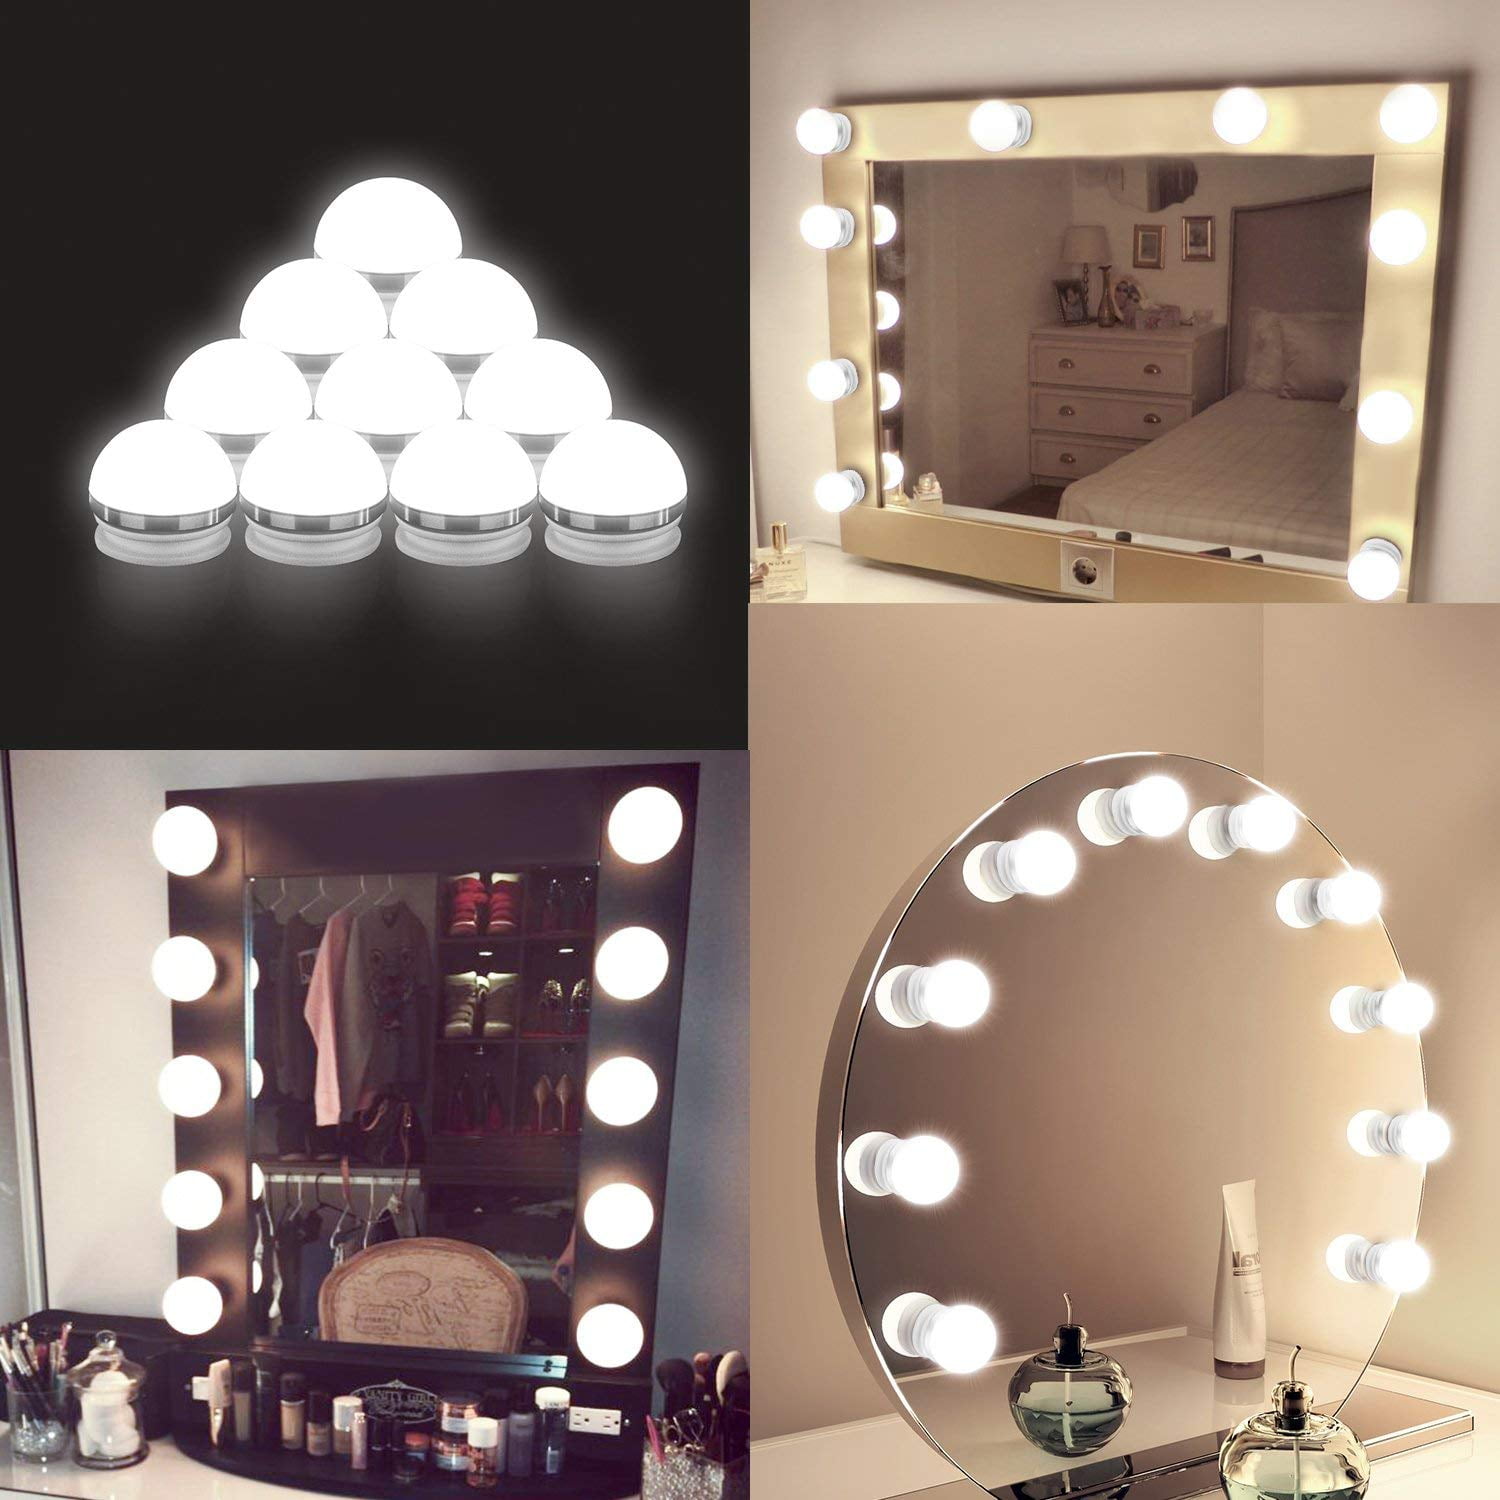 Hollywood Lighted Makeup Vanity Mirror, Diy Makeup Vanity Mirror Lights